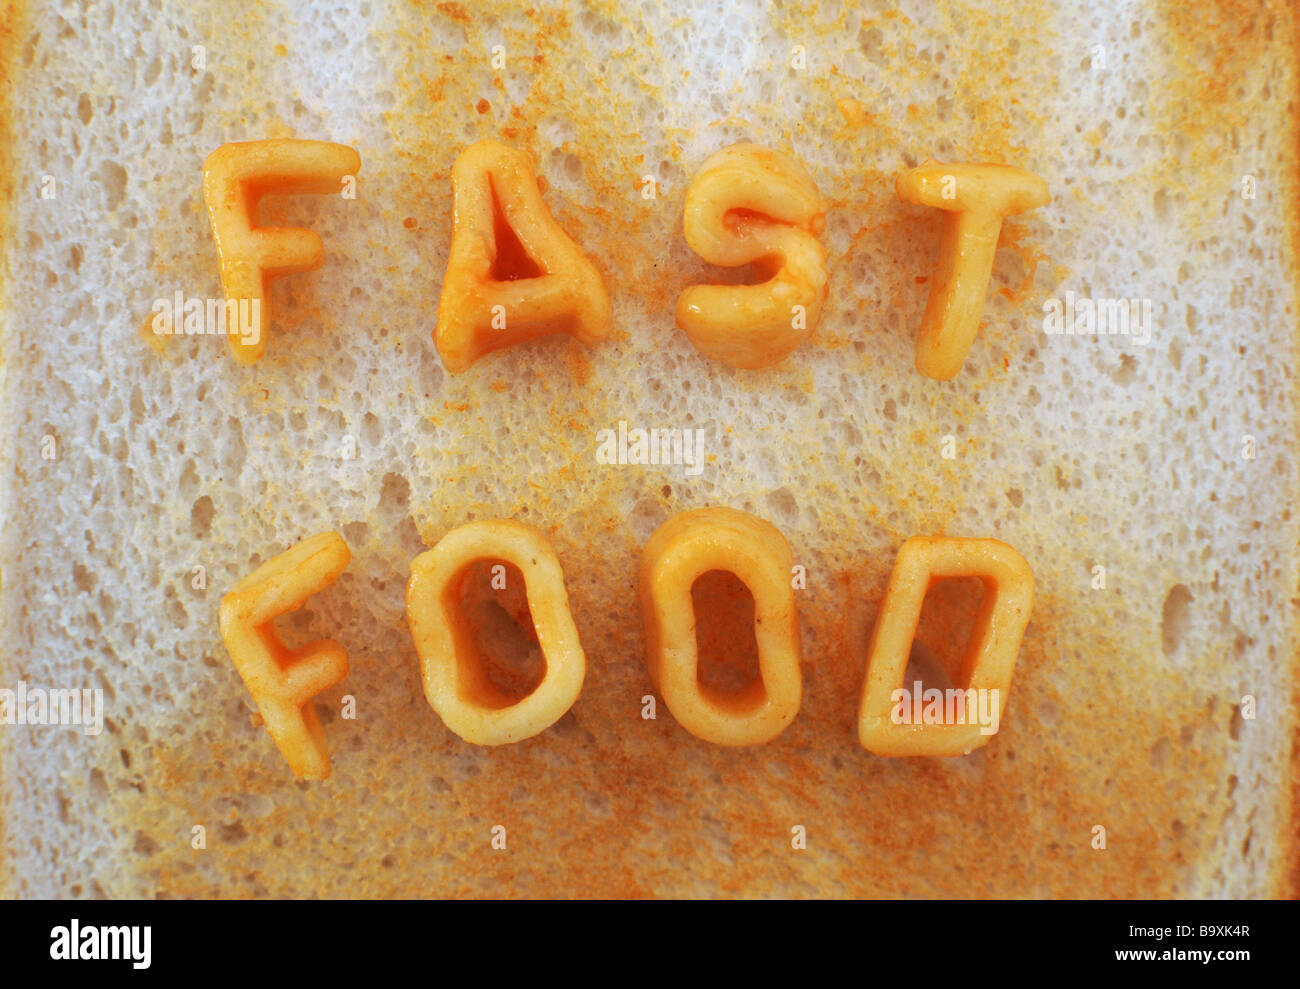 Alphabetti Spaghetti on toast Fast Food Stock Photo